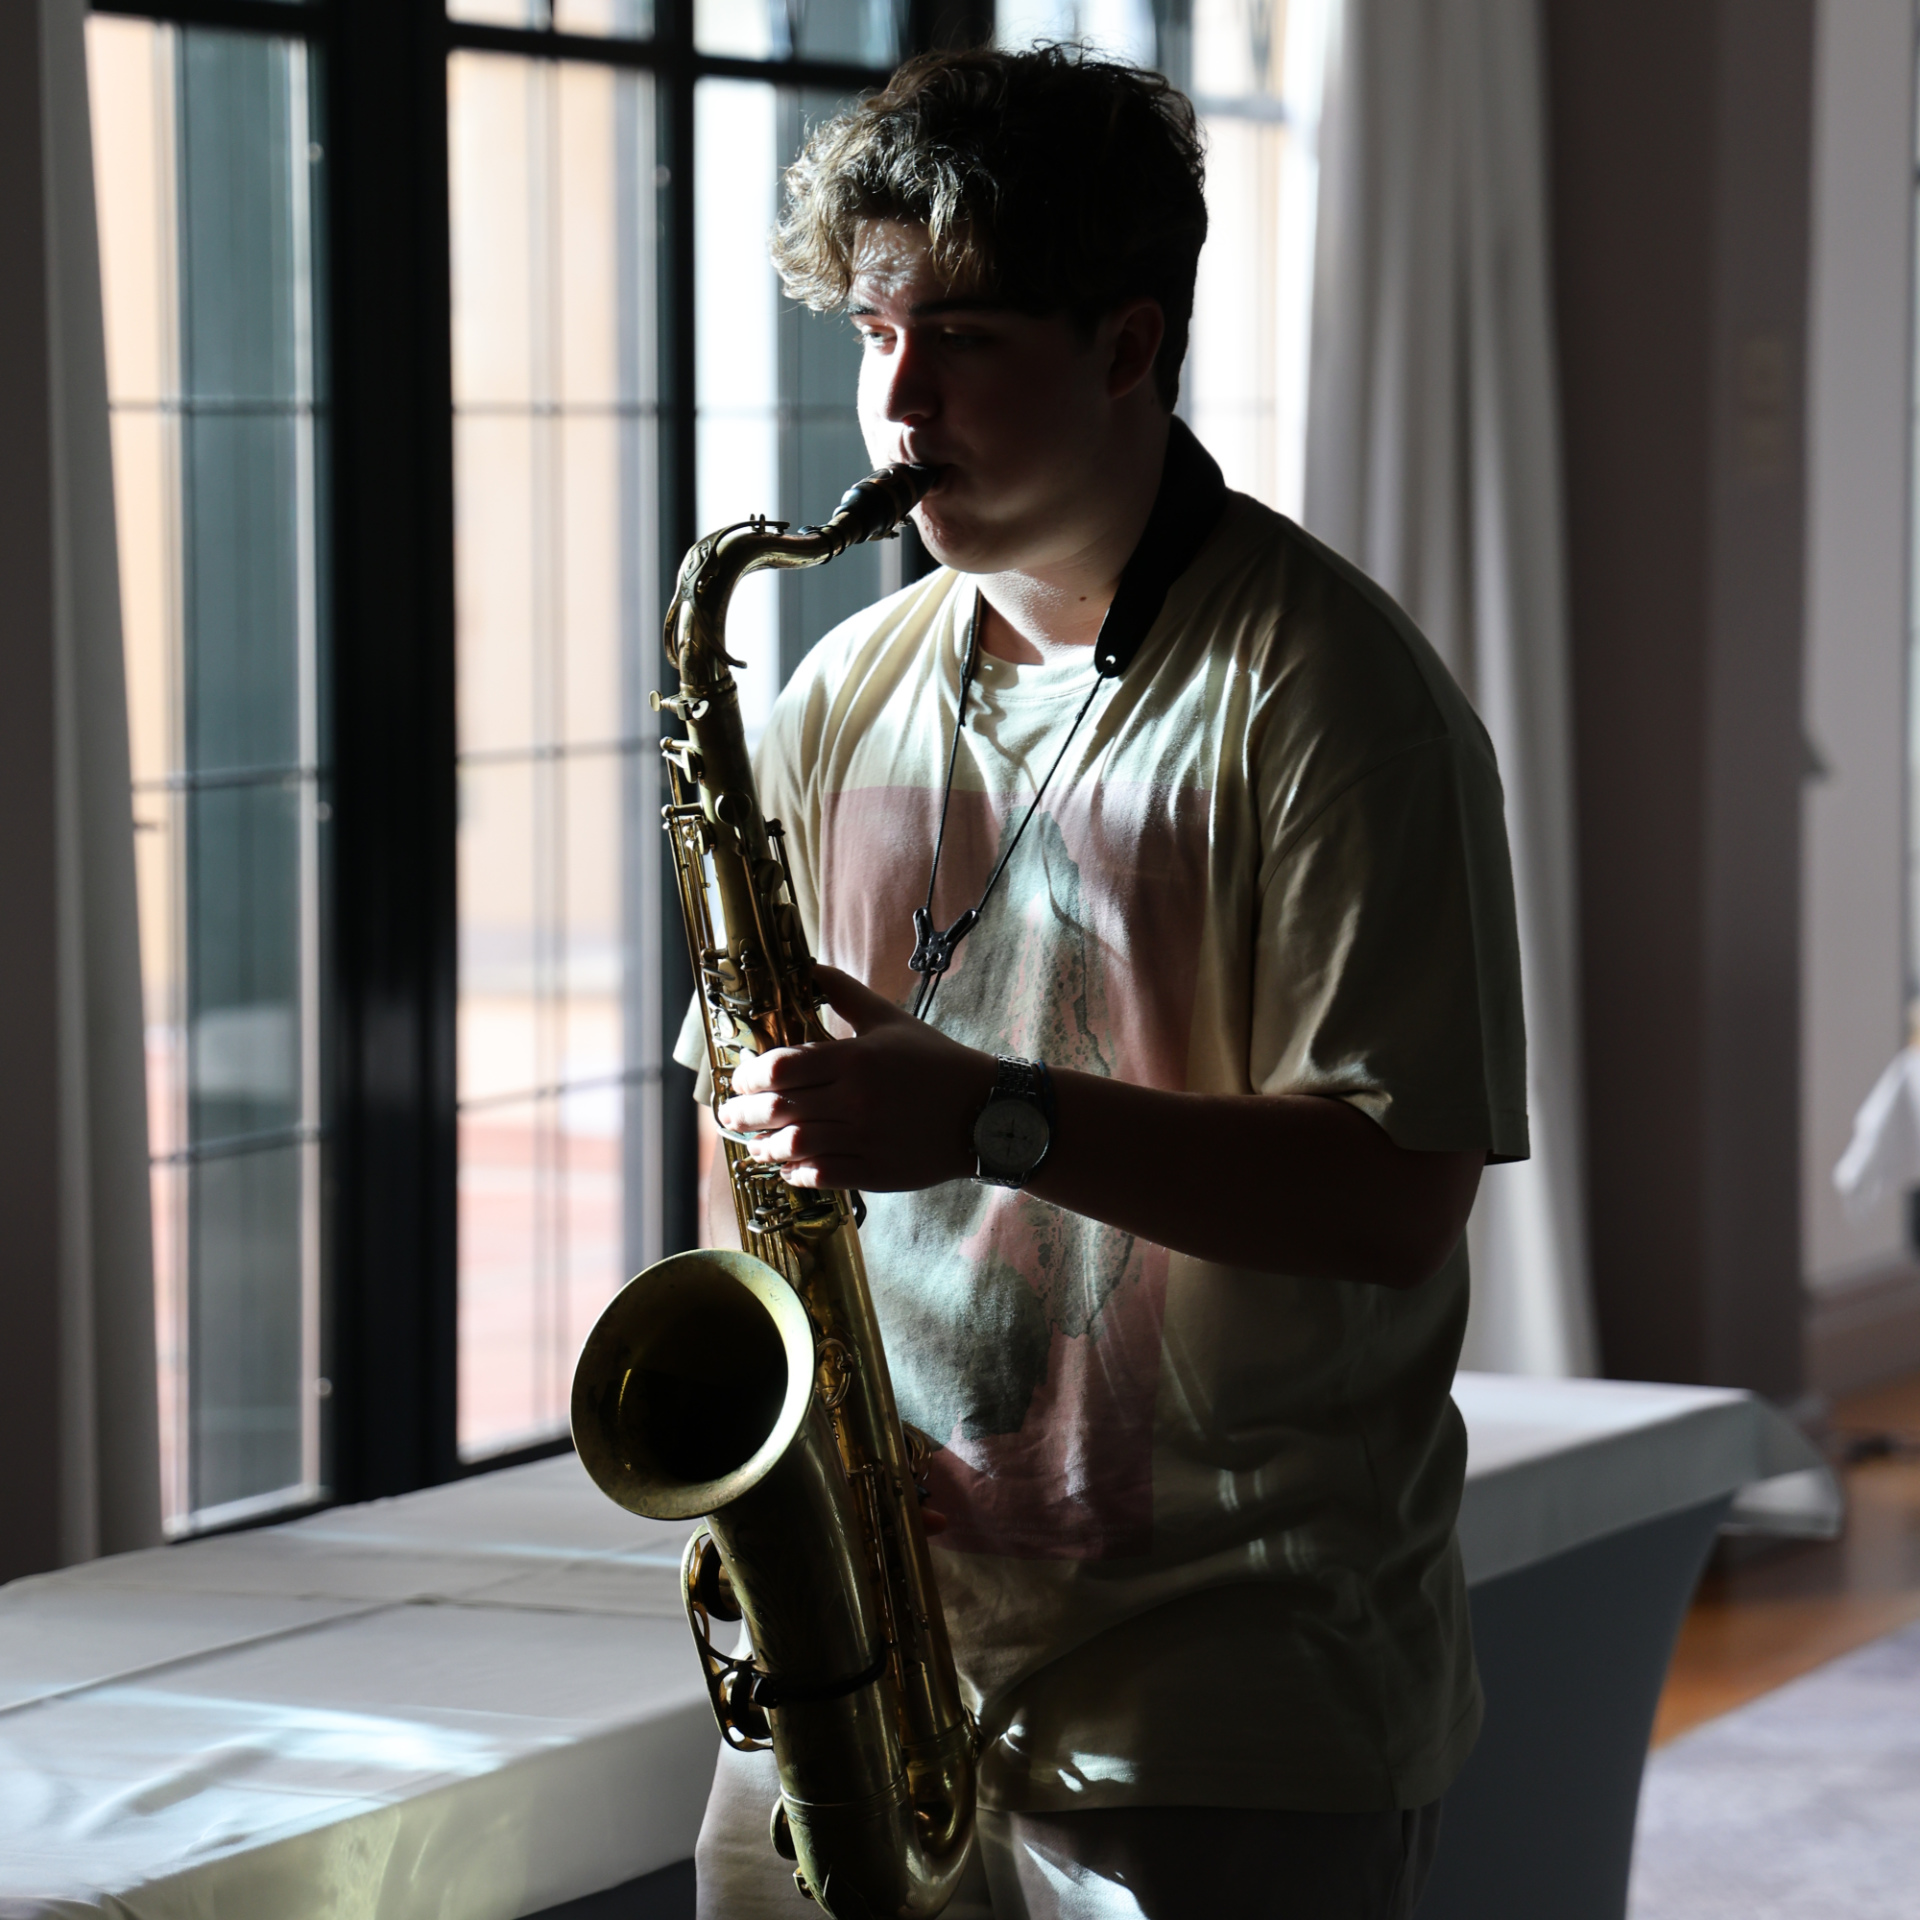 Justus Eggert Saxophon saxophonist